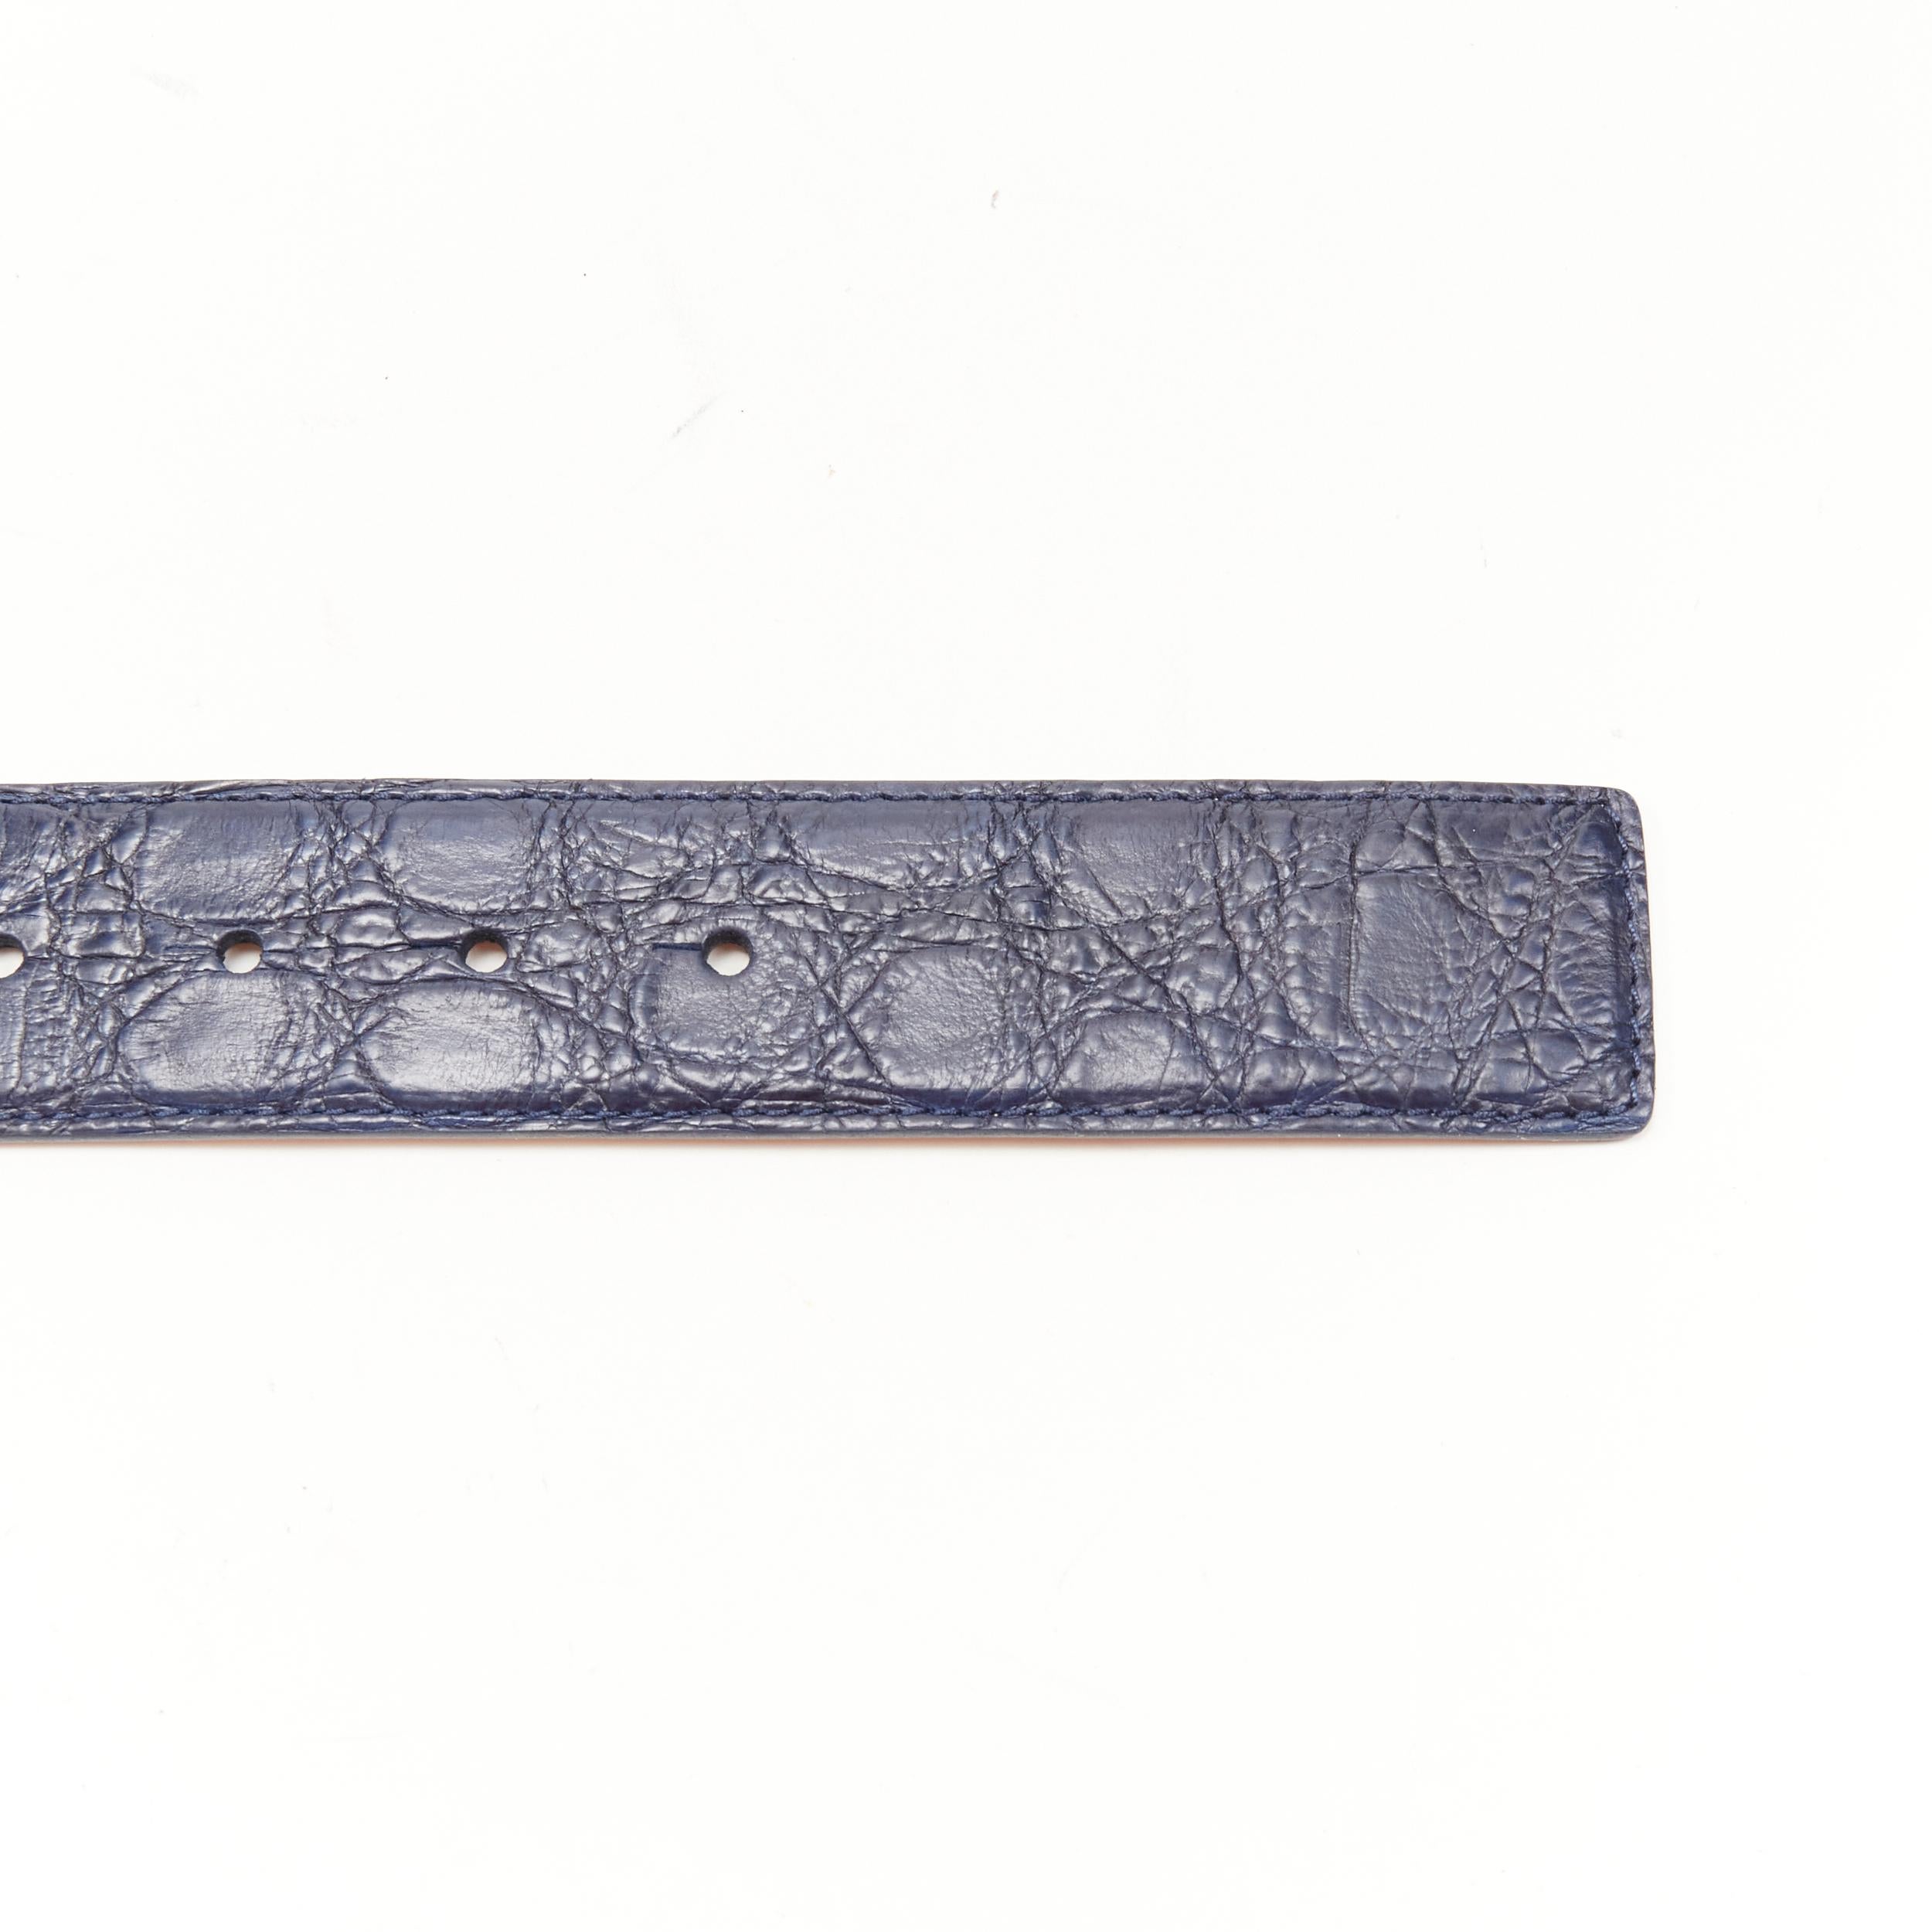 new VERSACE $1200 La Medusa silver buckle navy blue croc leather belt 110cm 44